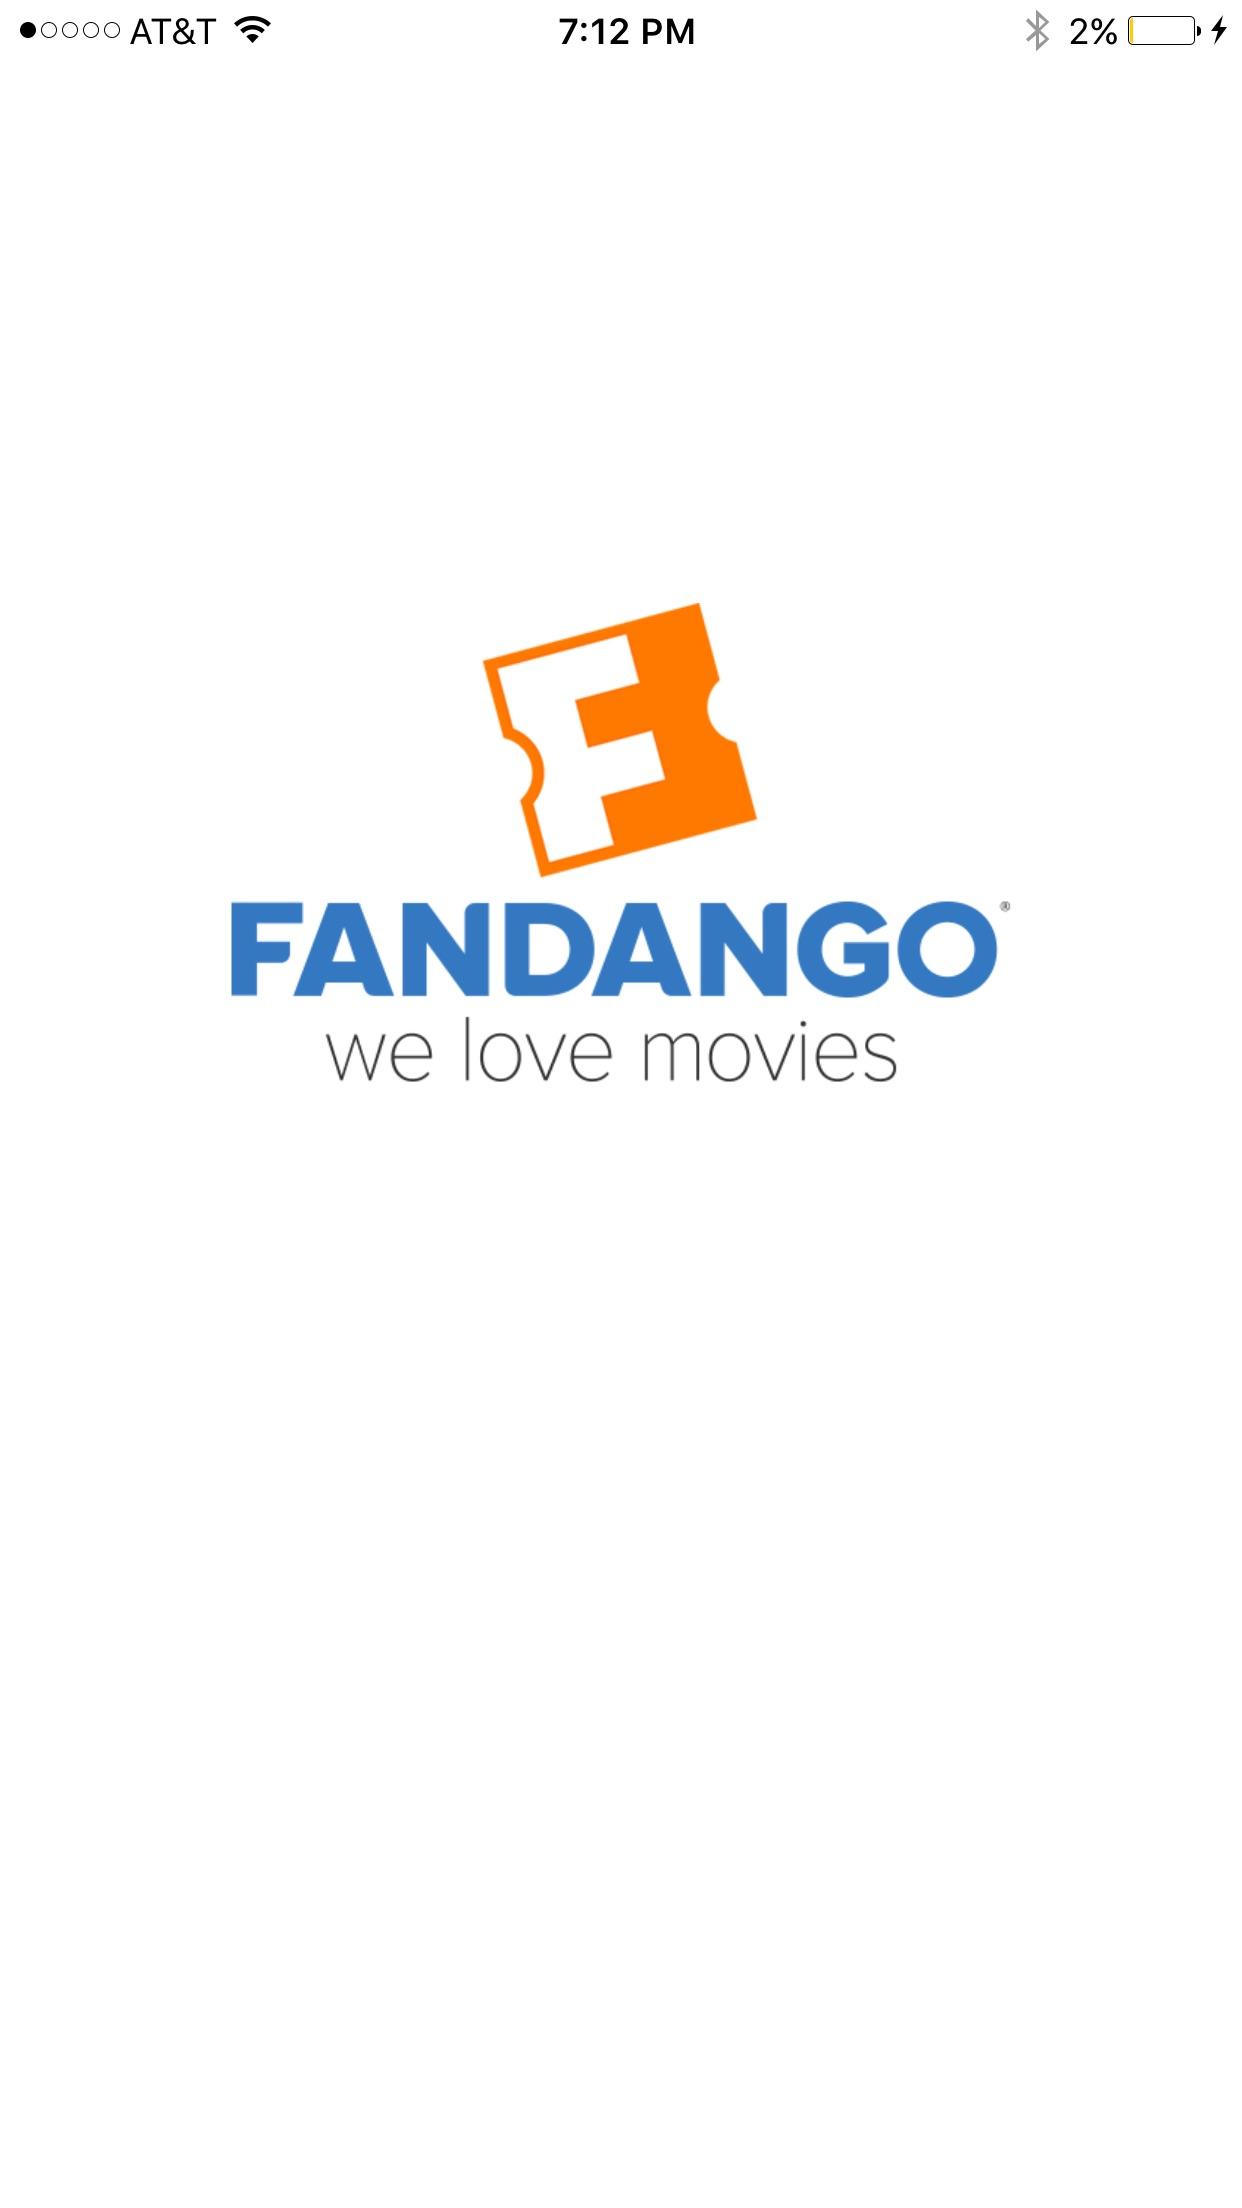 Upside Down F Logo - The fandango Logo is an F upside down too